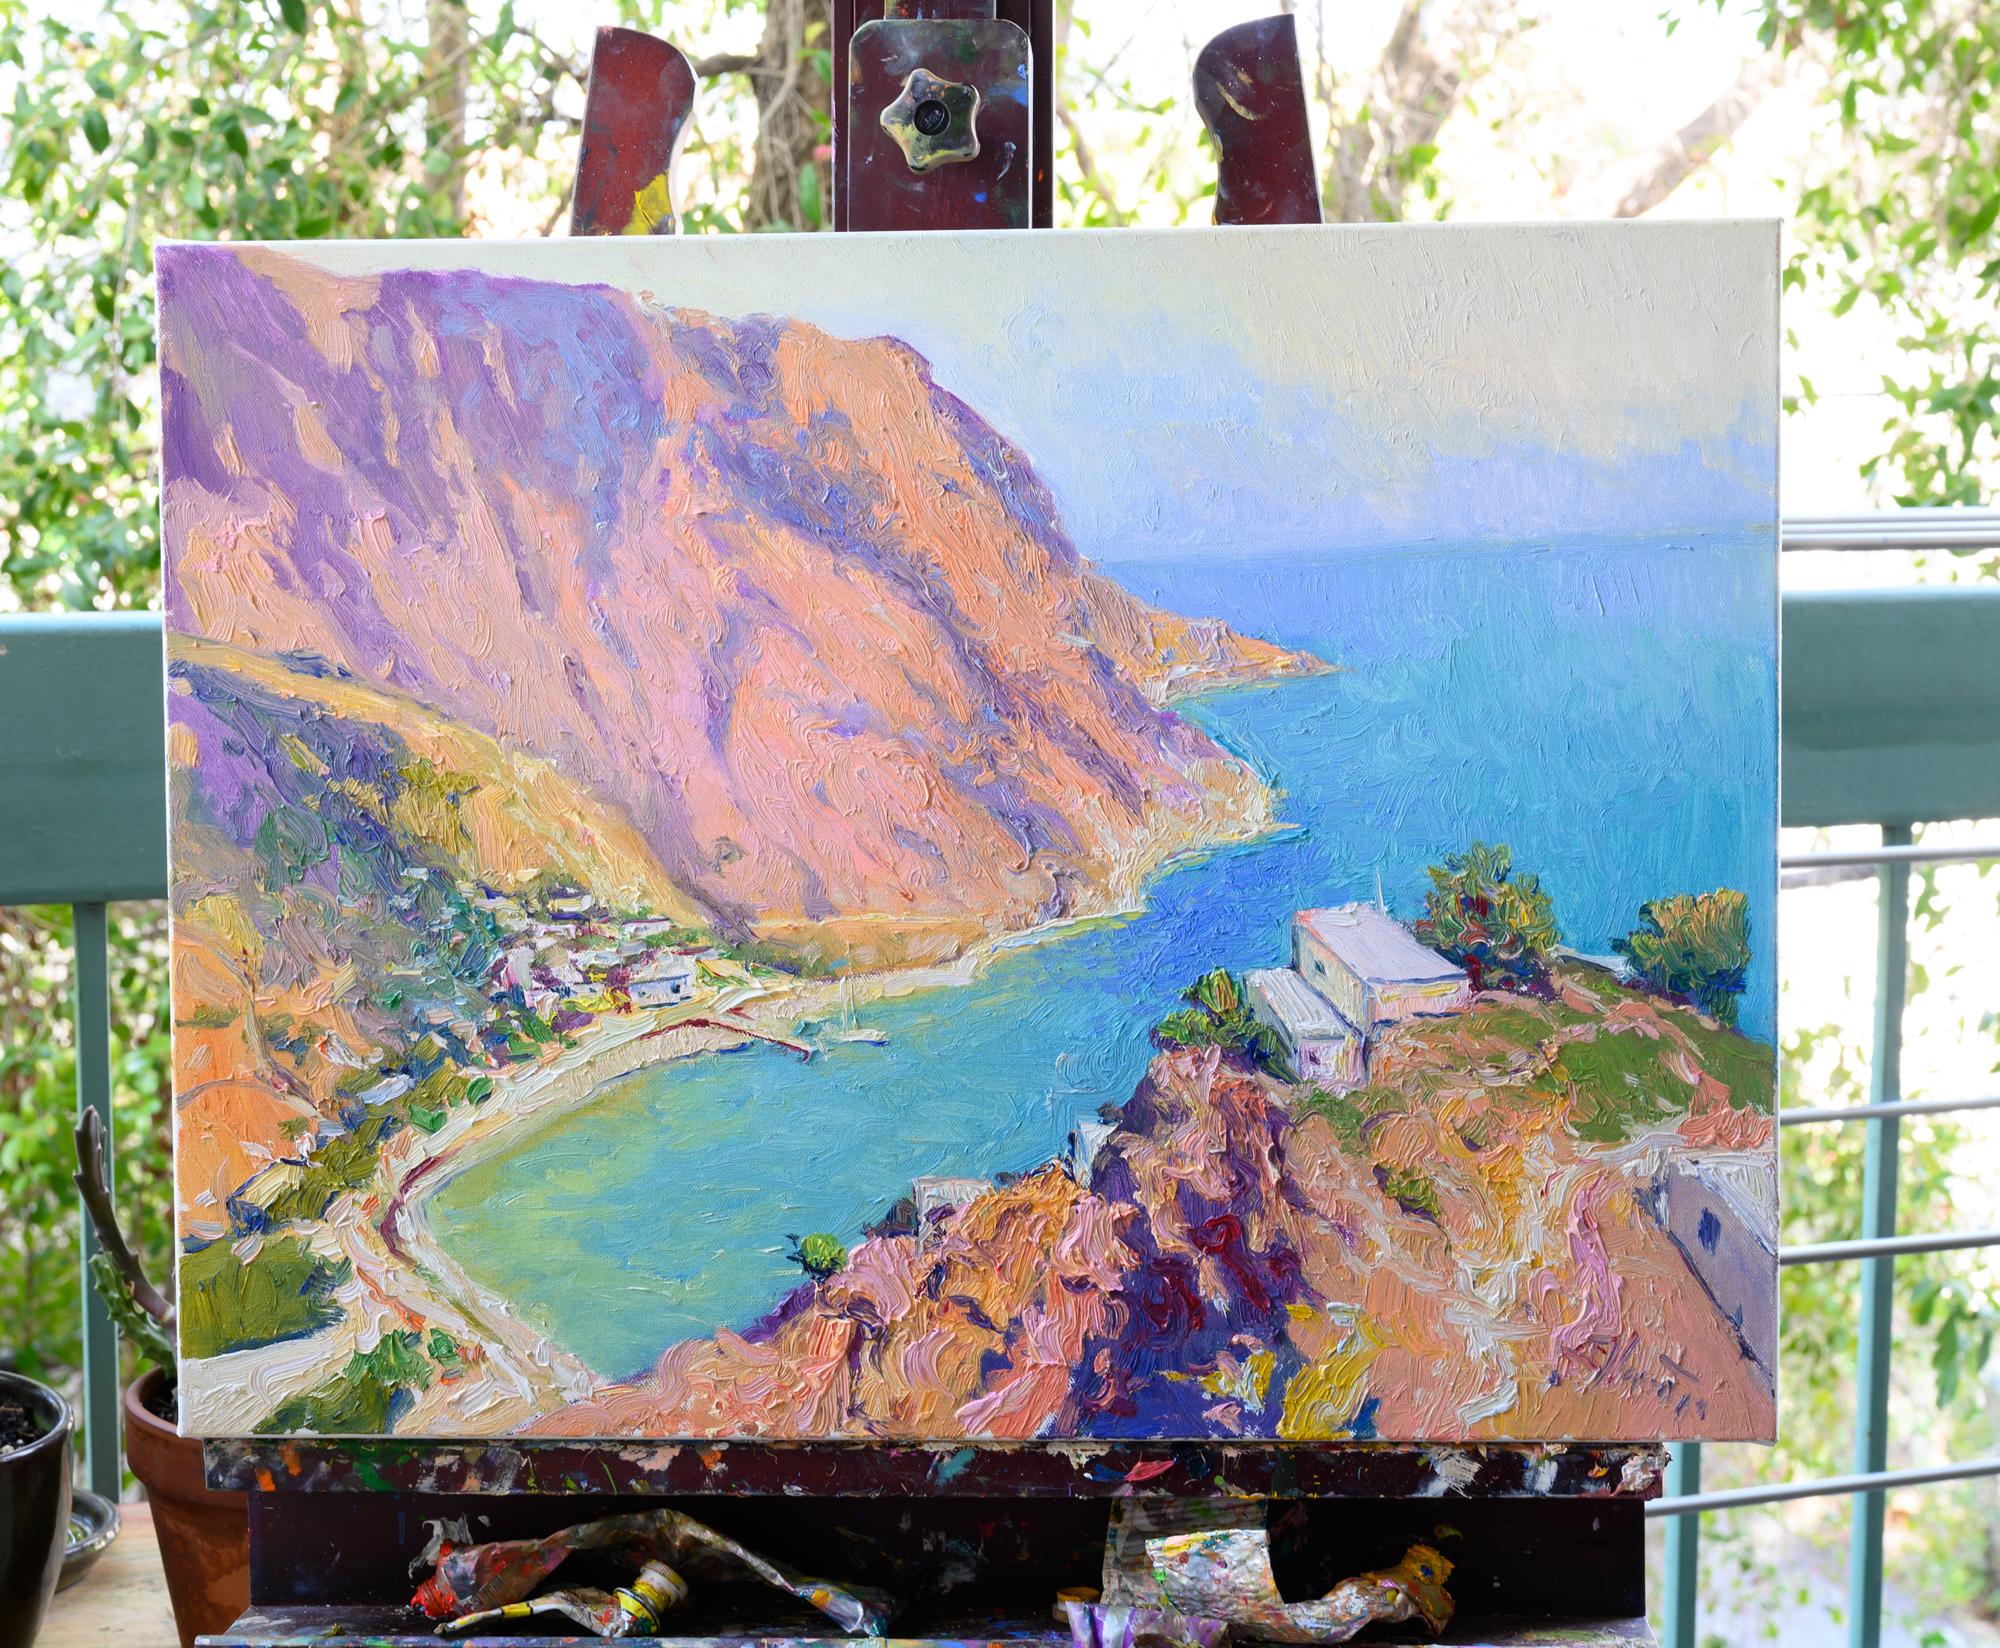 Landschaft von griechischen Inseln, Morgen, Ölgemälde (Abstrakter Impressionismus), Painting, von Suren Nersisyan